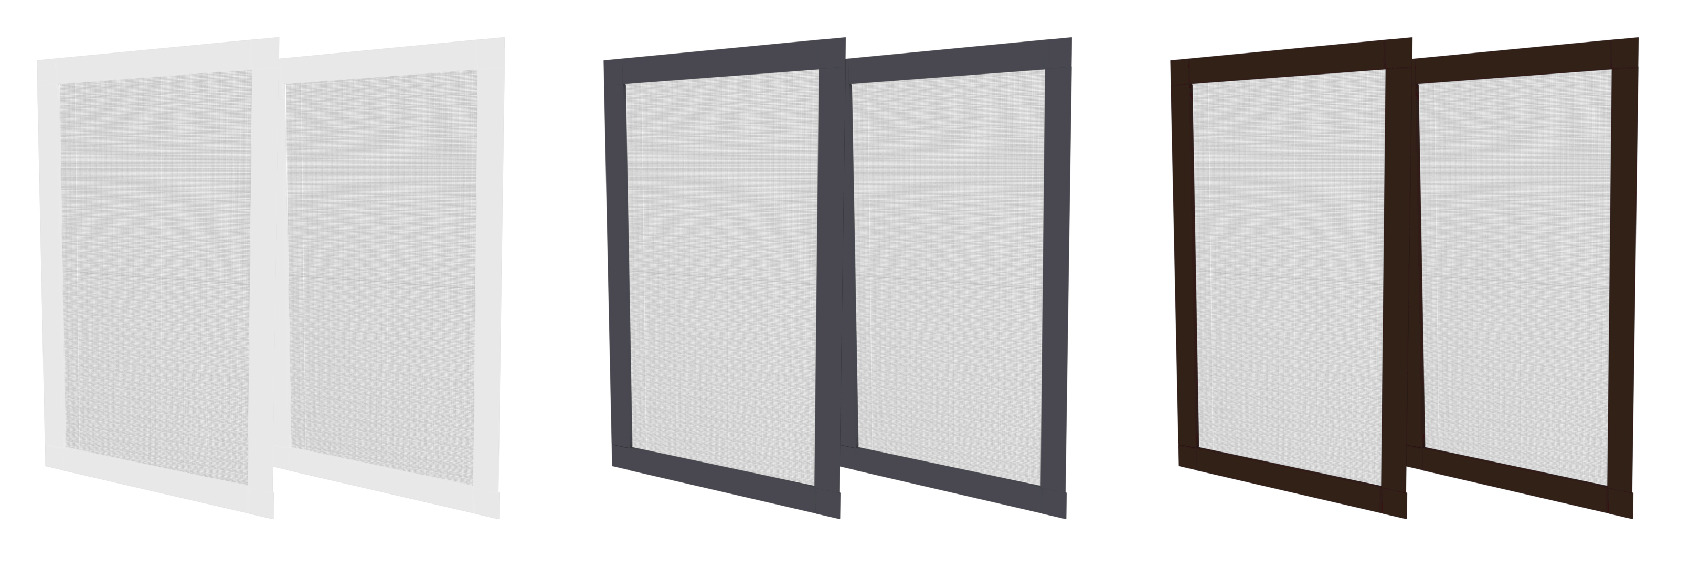 Moskitiera aluminiowa premium na wymiar na okno każde uniwersalna ALU